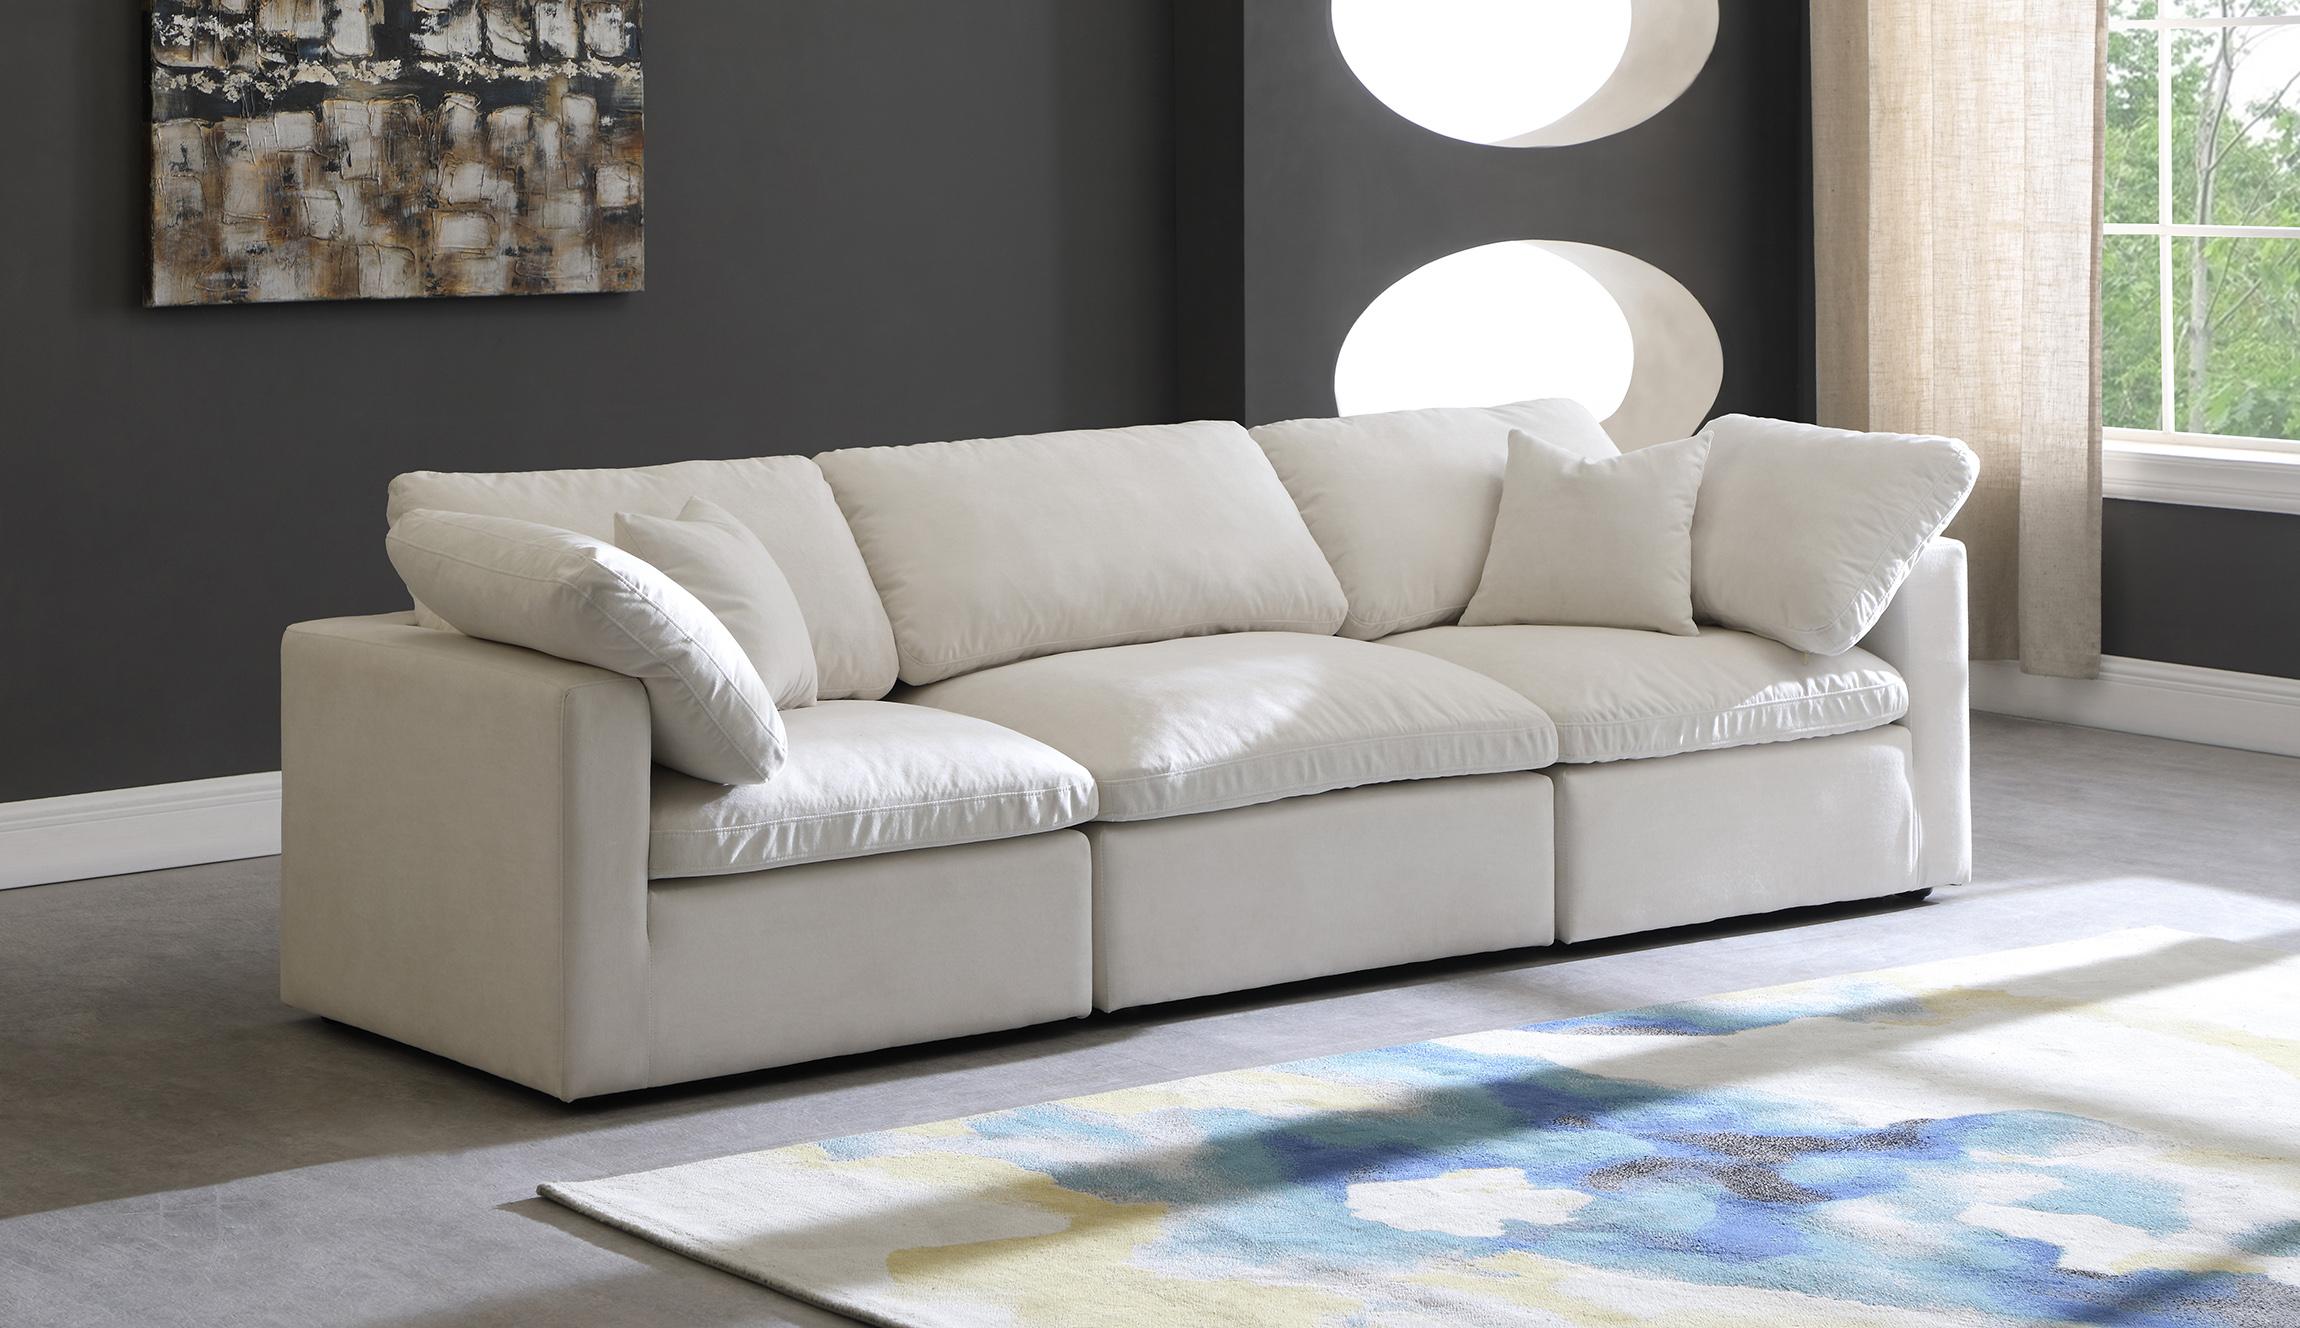 

    
Meridian Furniture 602Cream-S105 Modular Sofa Cream 602Cream-S105
